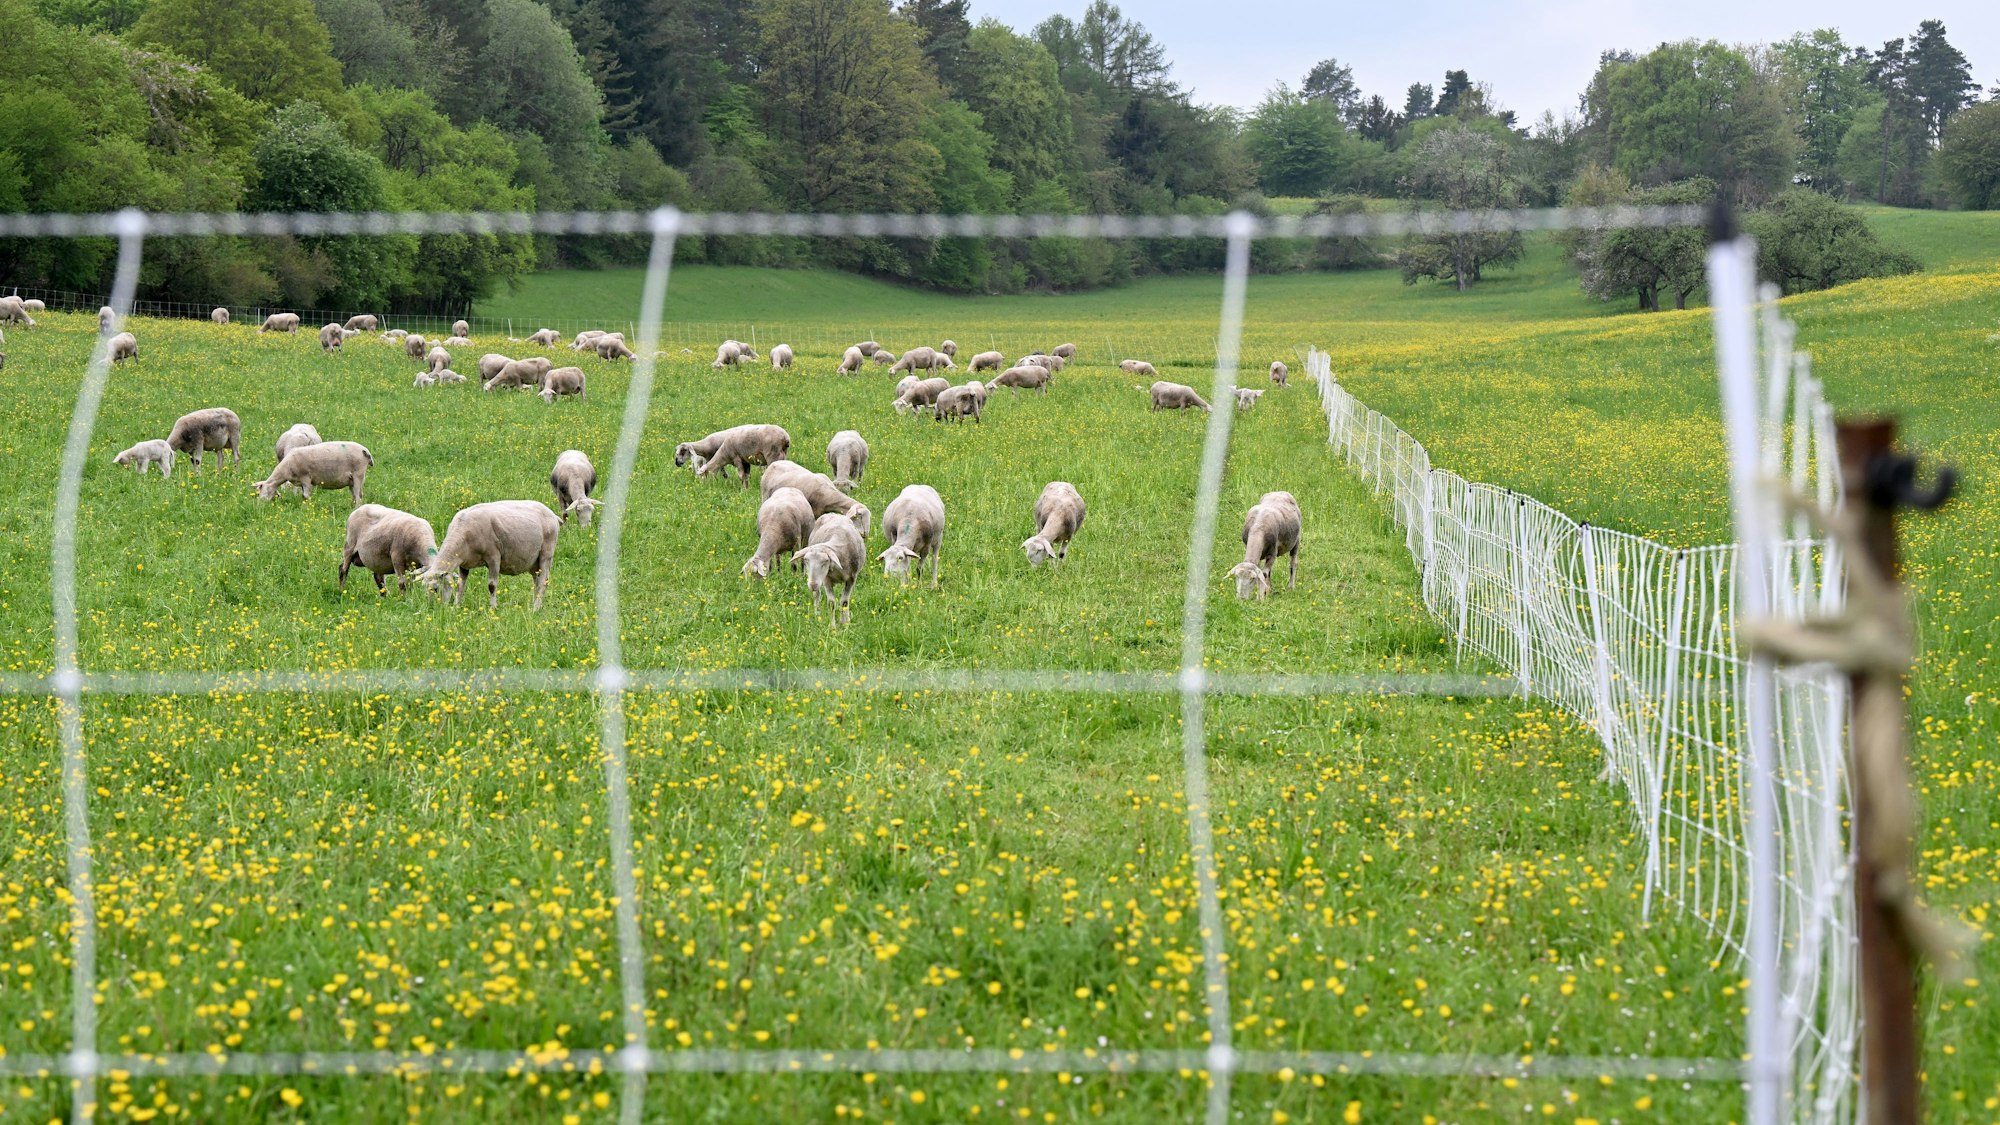 Schafe stehen auf einer Weide, die von einem elektischen Herdenschutzzaun eingezäunt ist.